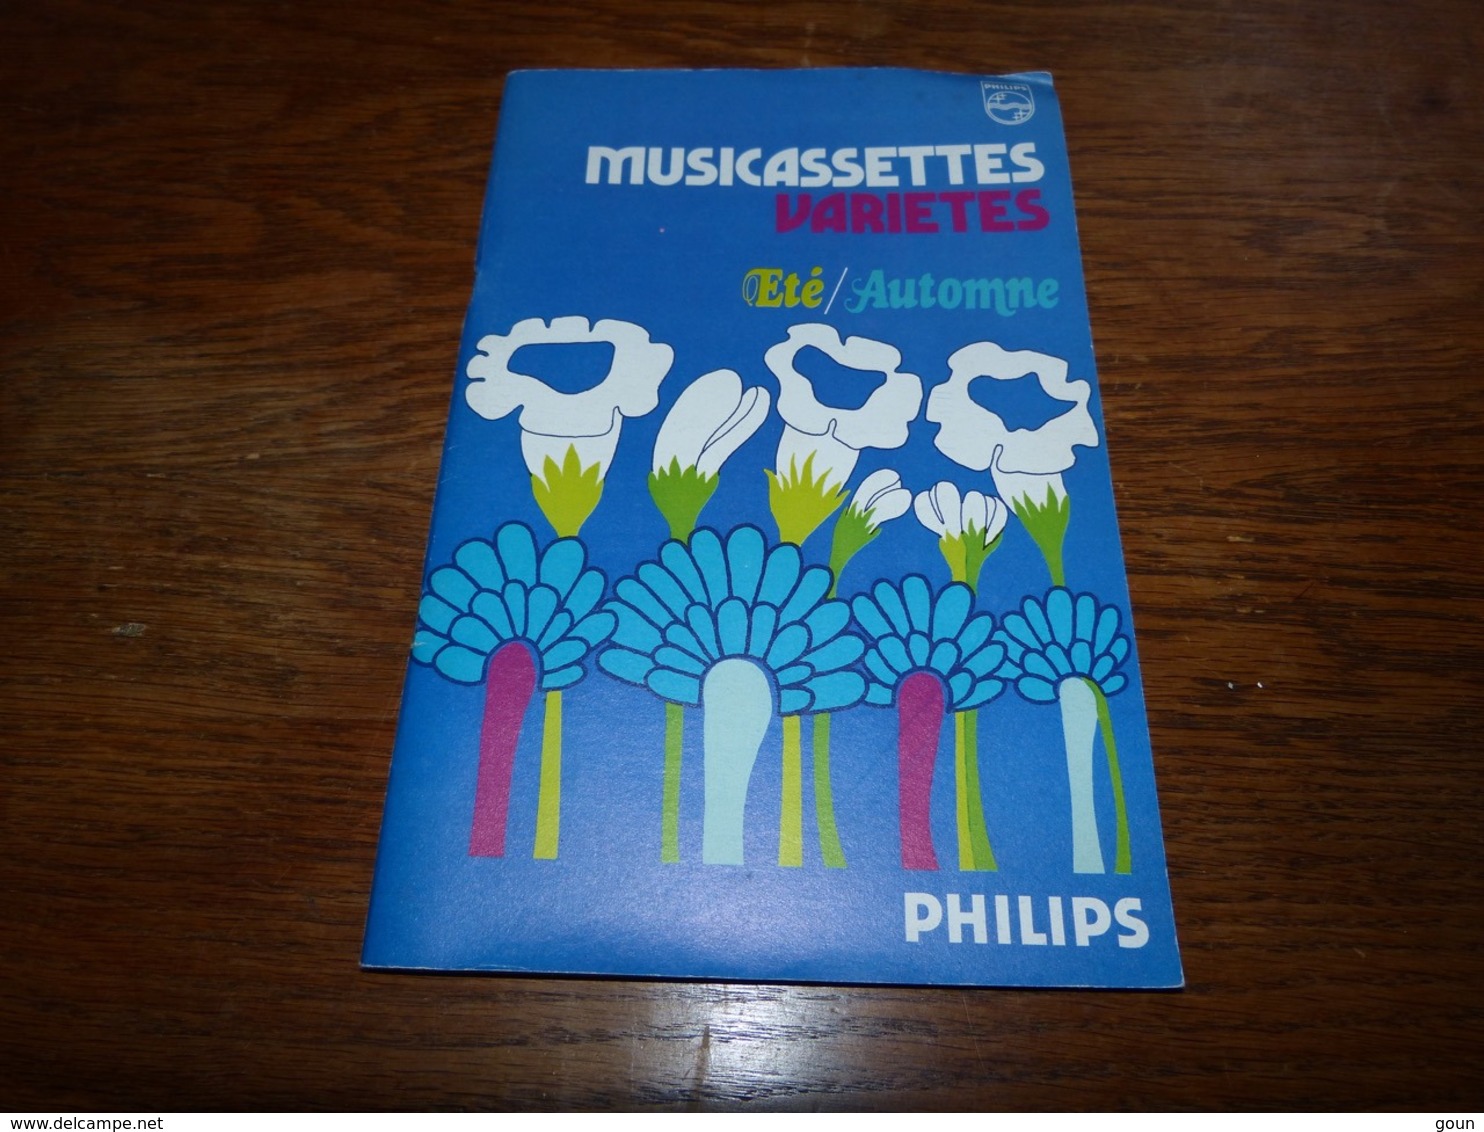 Catalogue Philips Musicassettes K7 Jacques Brel Status QUo Claude François Johnny Hallyday Genesis Etc Etc - Musica